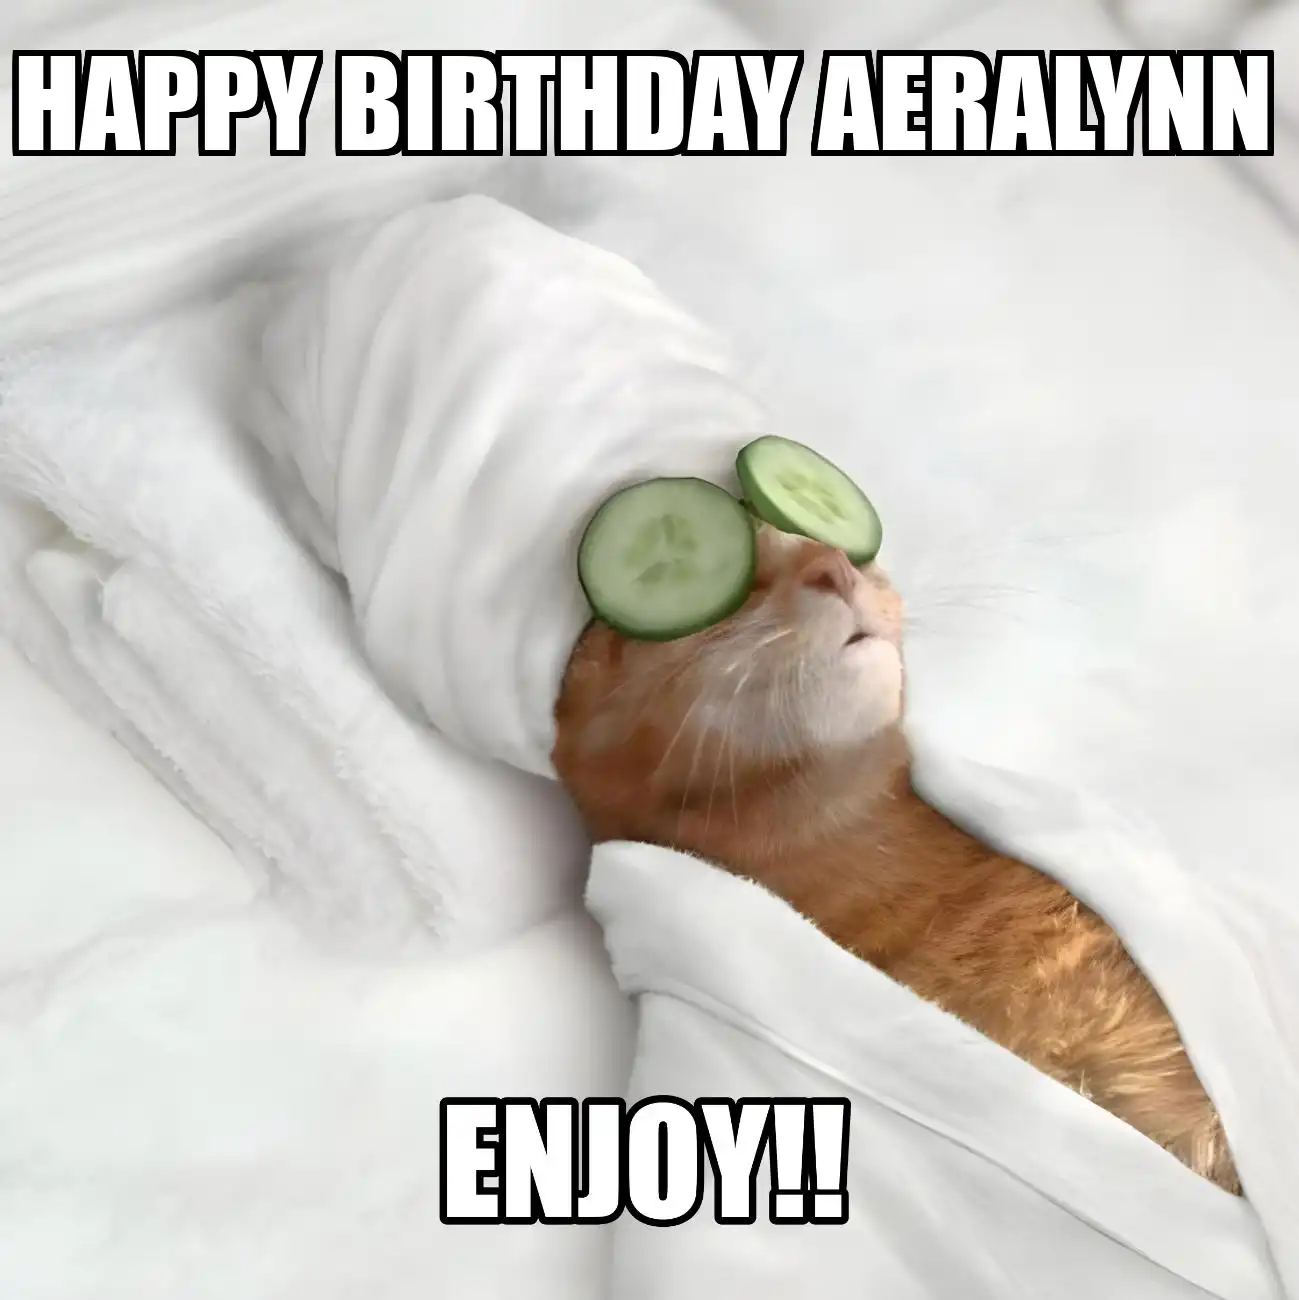 Happy Birthday Aeralynn Enjoy Cat Meme